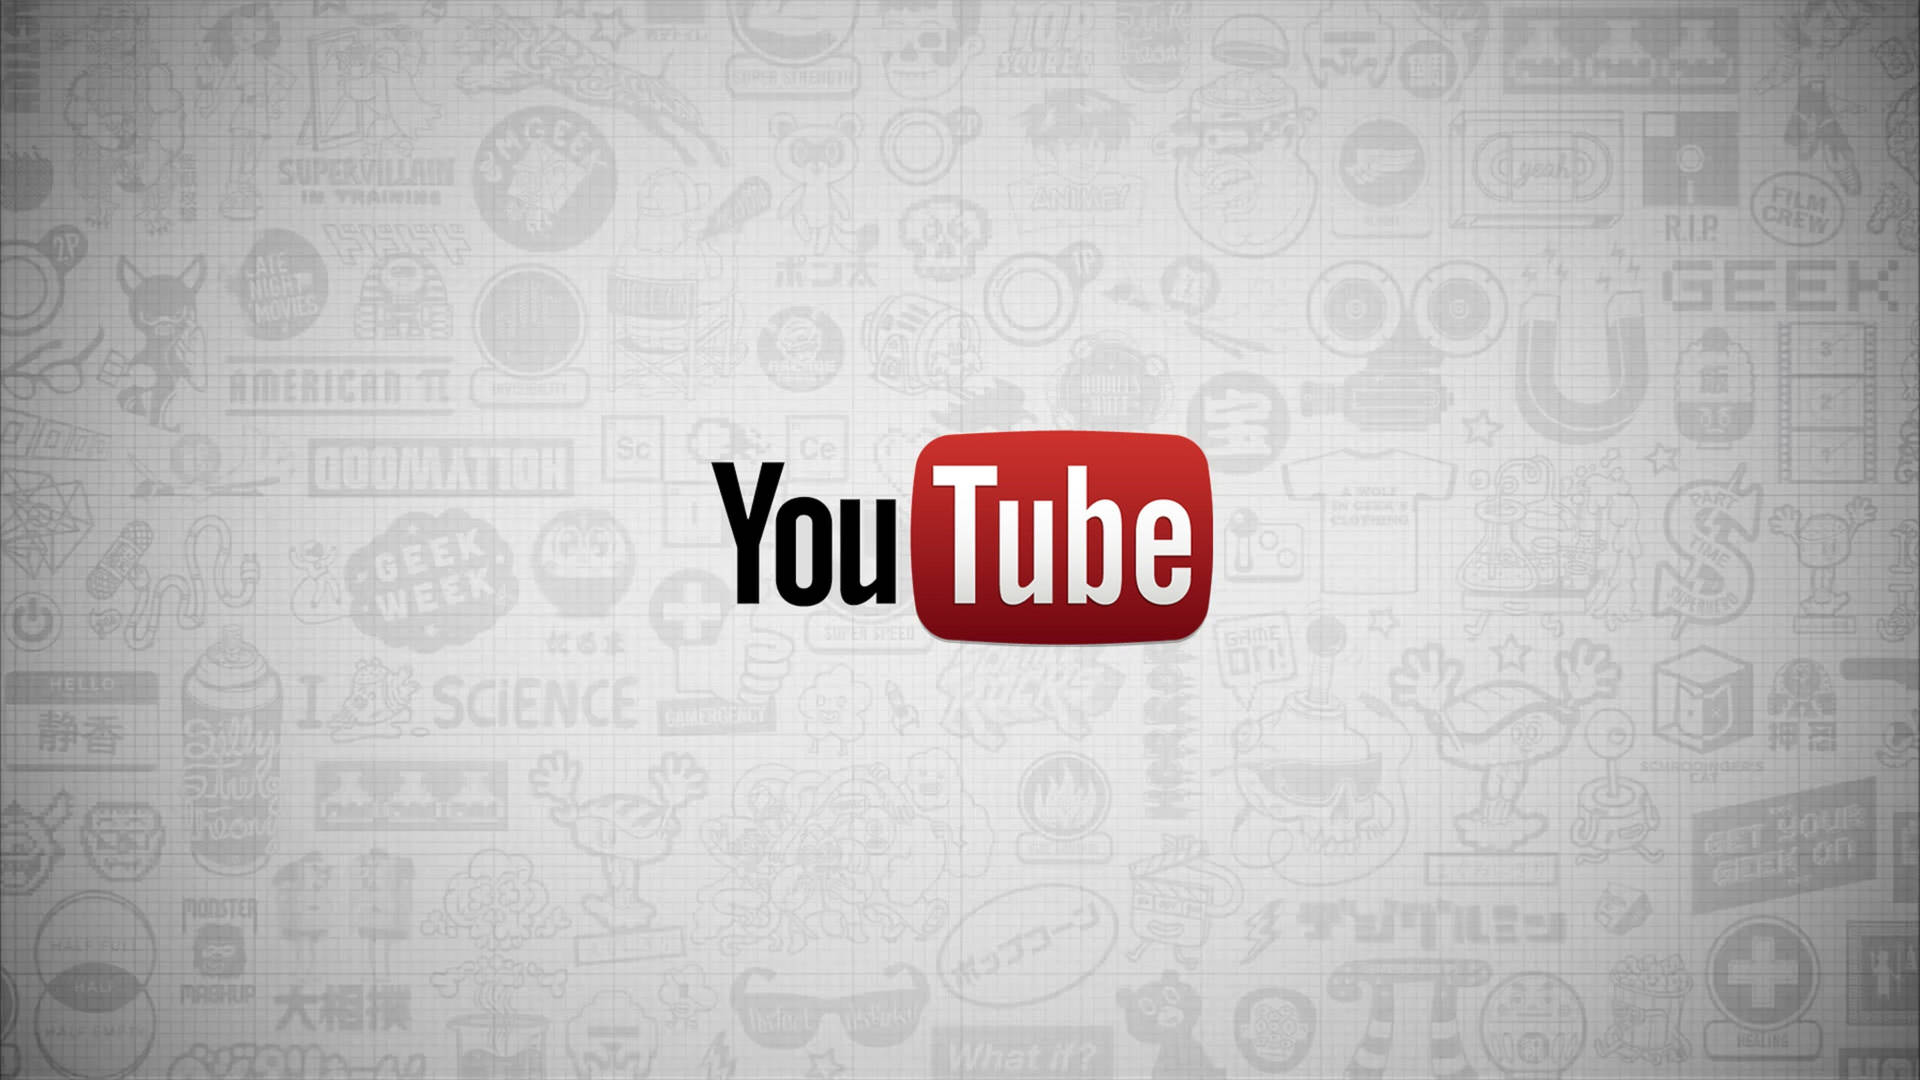 Bạn đang muốn thay đổi hình nền YouTube? Hãy nhấn vào ảnh và tải miễn phí những hình nền YouTube độc đáo, đẹp mắt và phù hợp với sở thích của bạn. Thay đổi hình nền và trải nghiệm YouTube theo cách của riêng bạn.